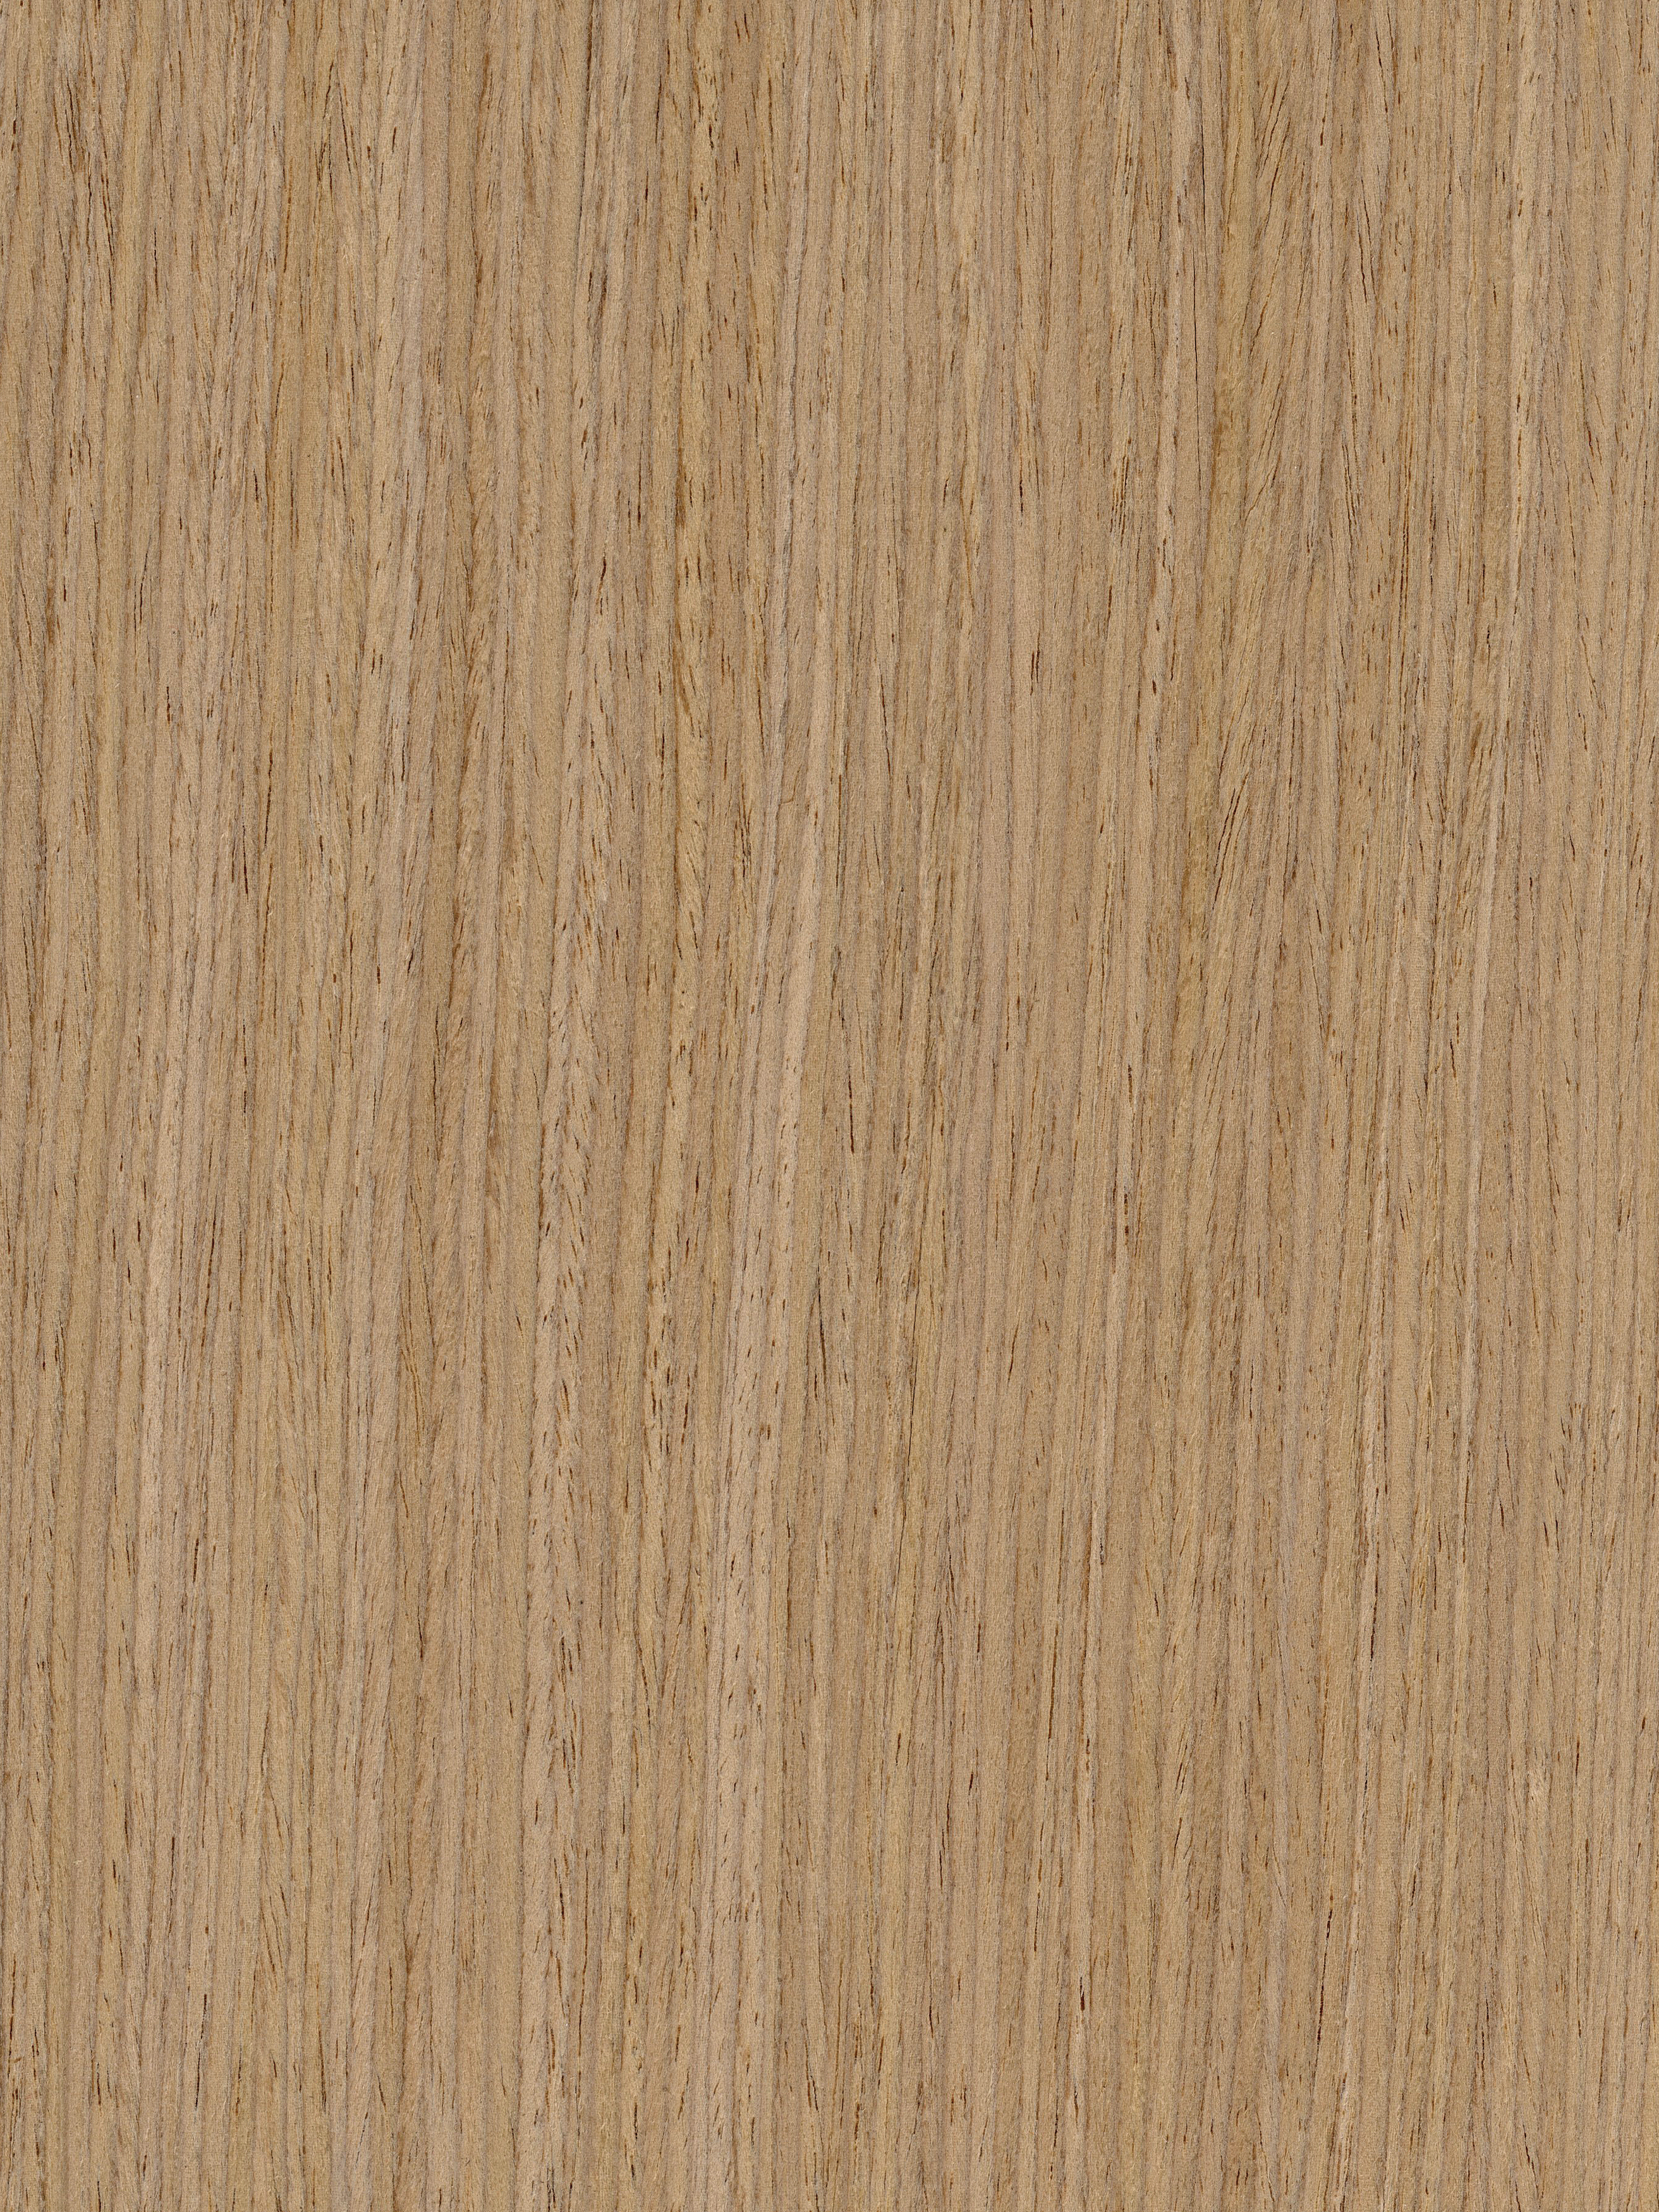 Macassar Ebony - Echo Wood Veneer - Qtr - EB-7001S